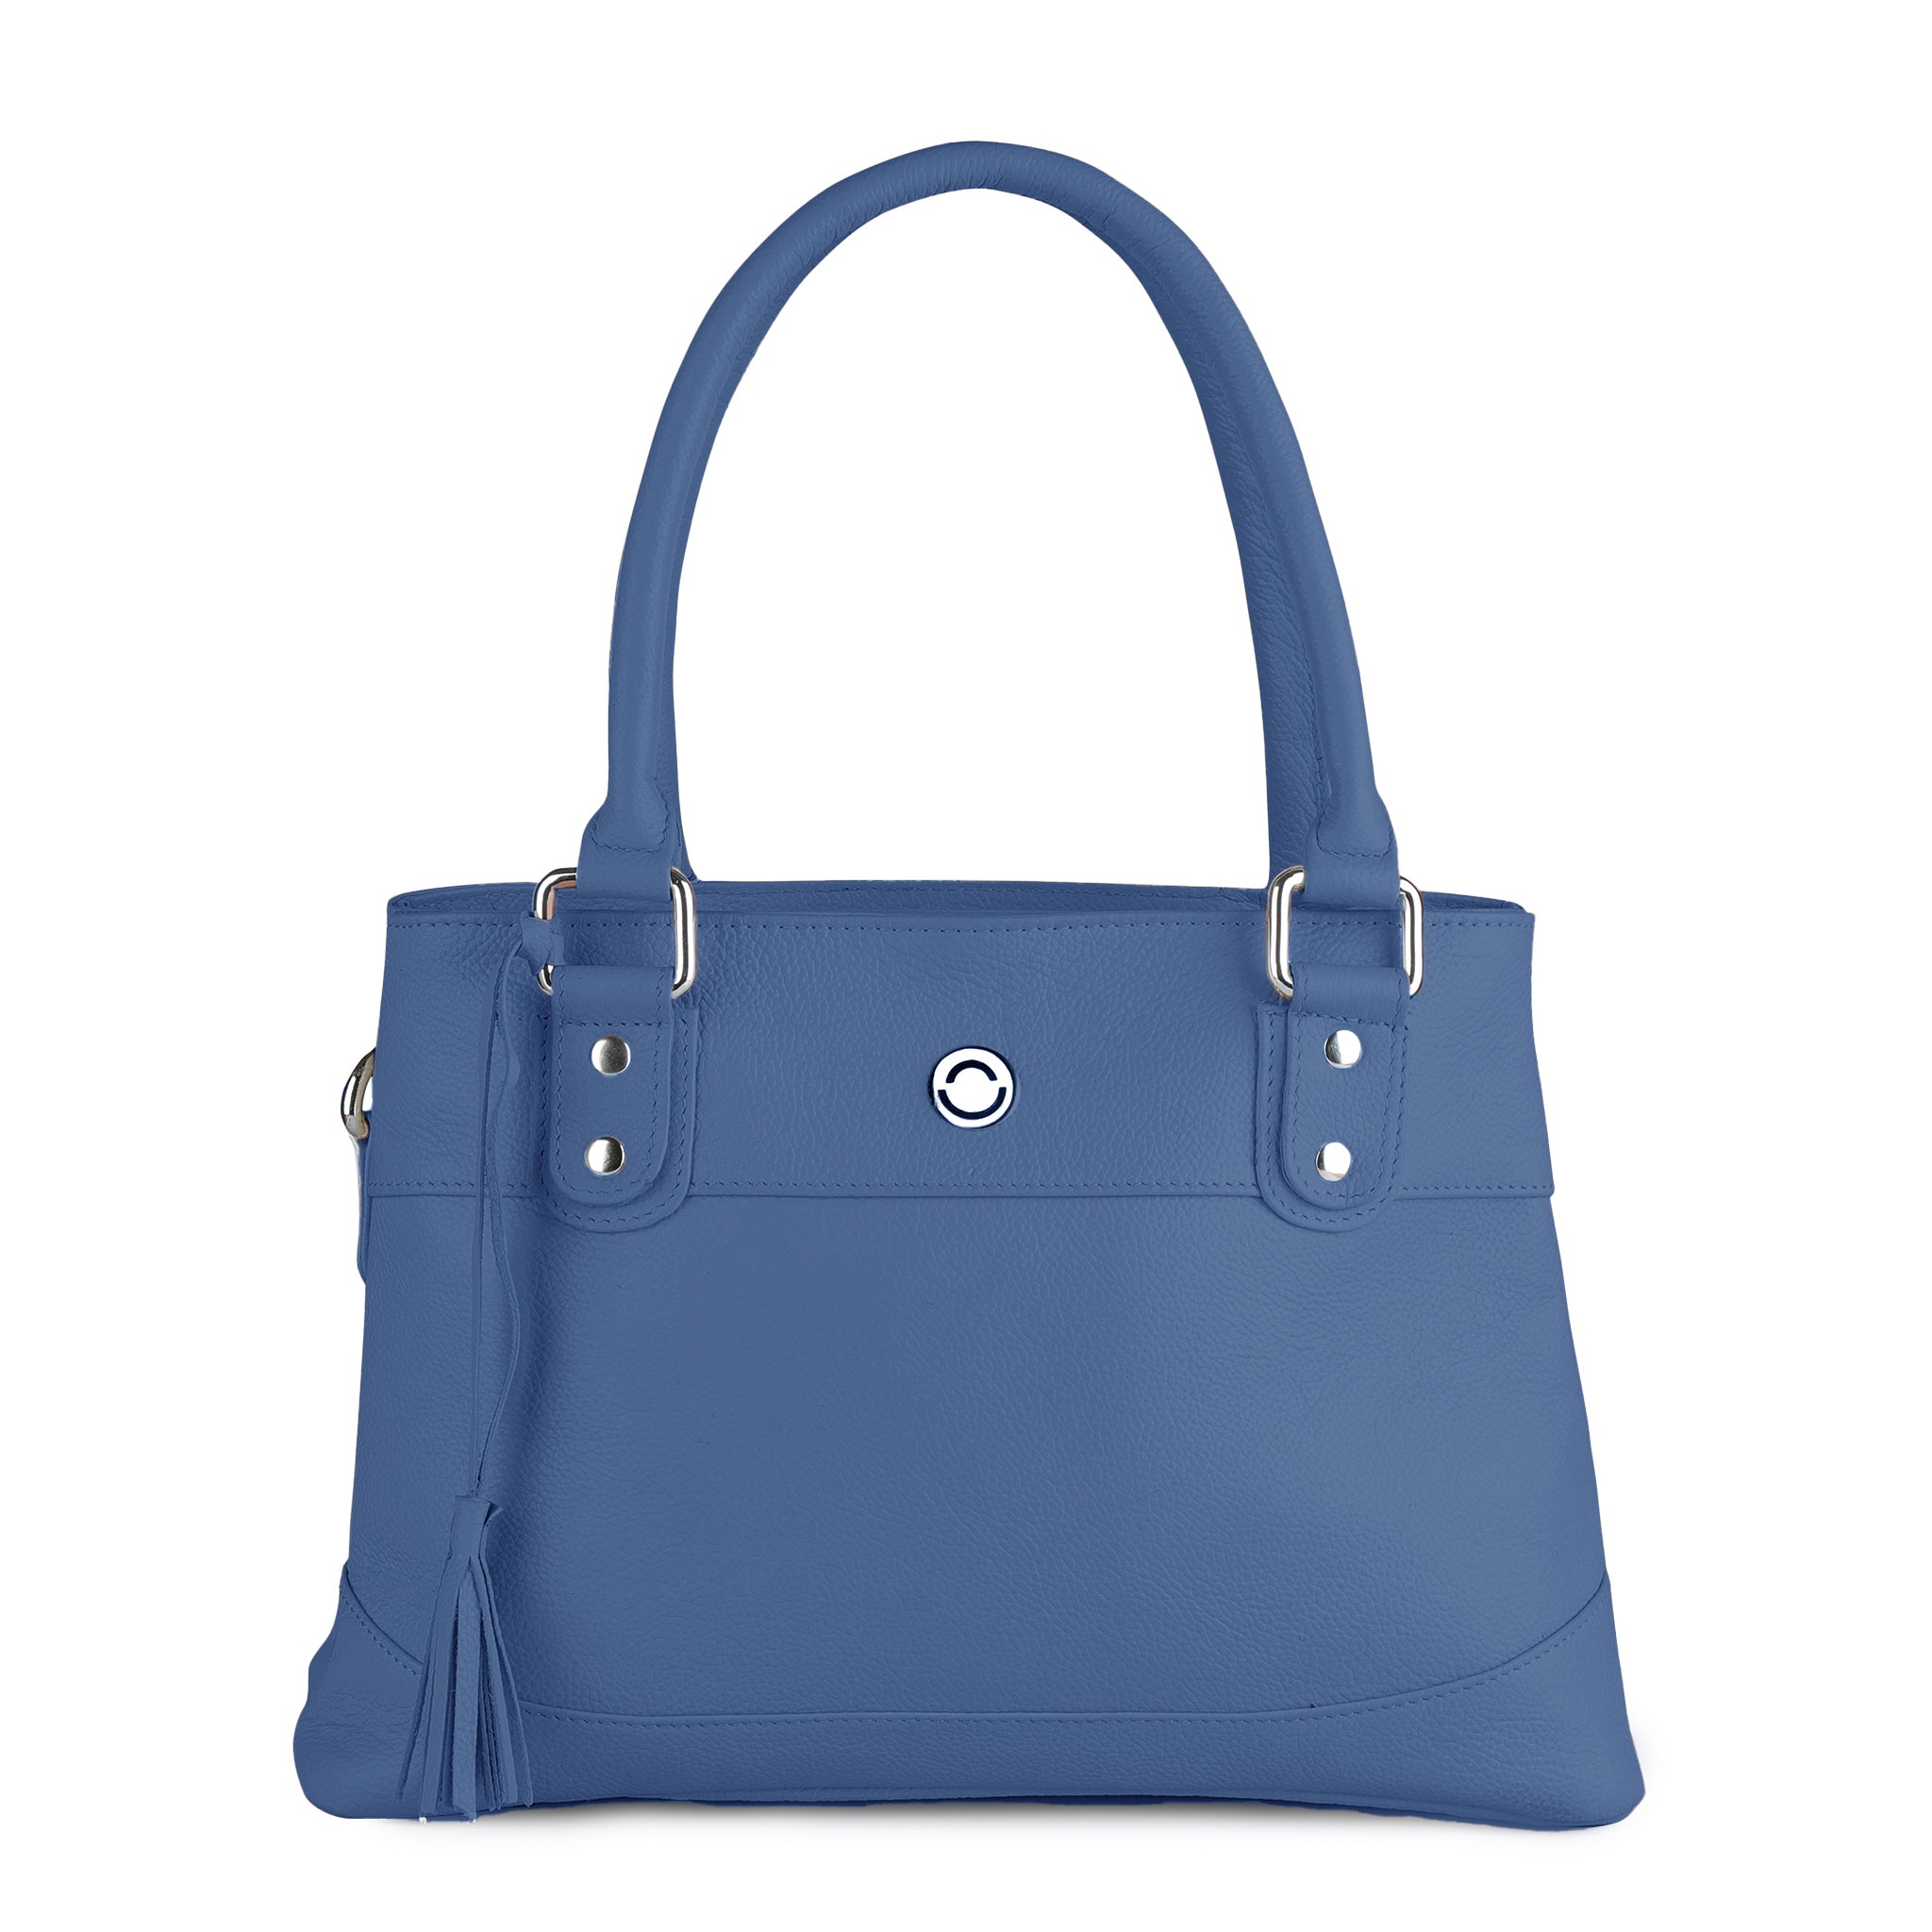 Buy LIKE STYLE Women Blue Handbag BLUE Online @ Best Price in India |  Flipkart.com